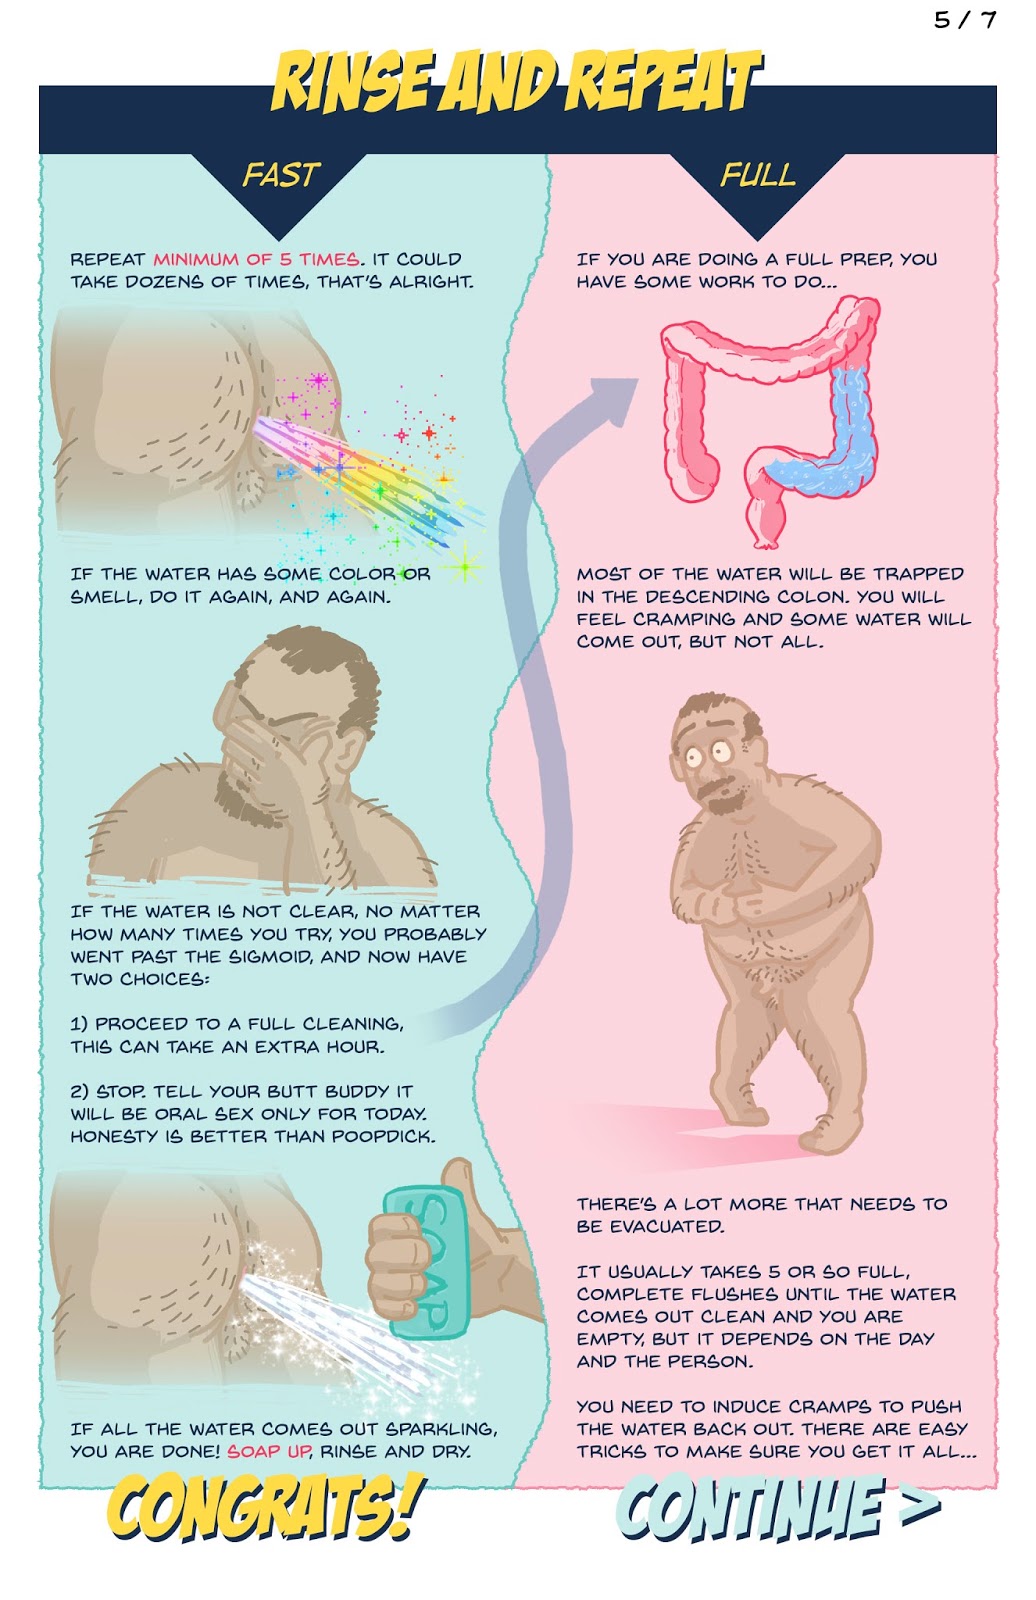 pasa el mocho: Guía completa para la perfecta limpieza anal